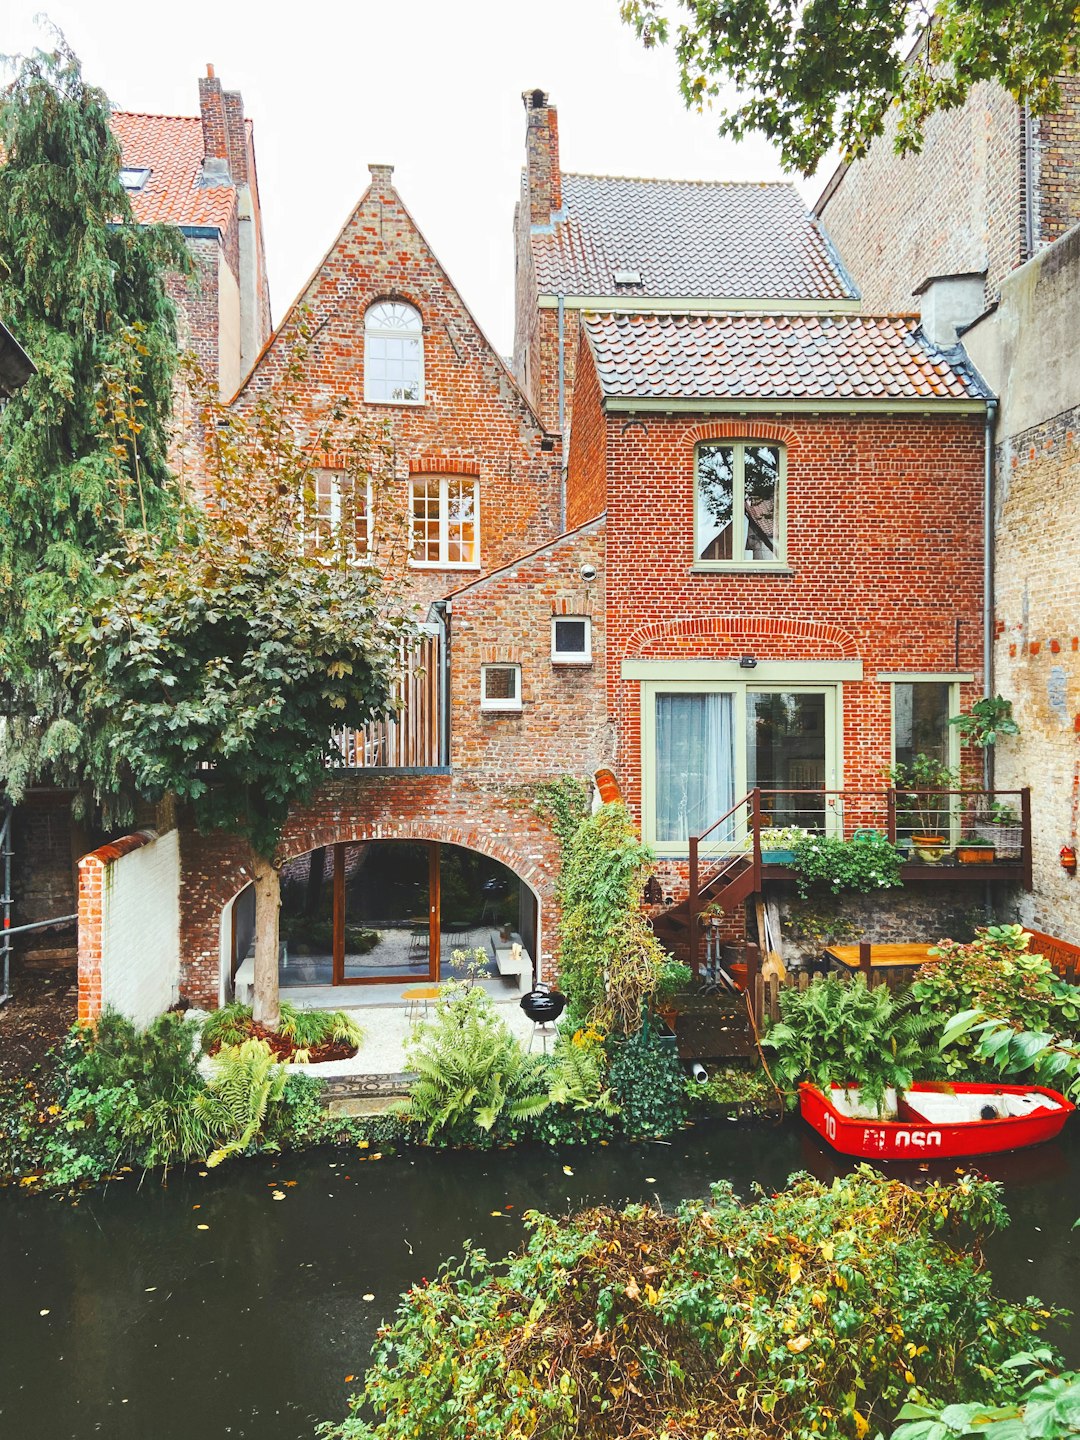 Waterway photo spot Bruges Museum aan de Stroom